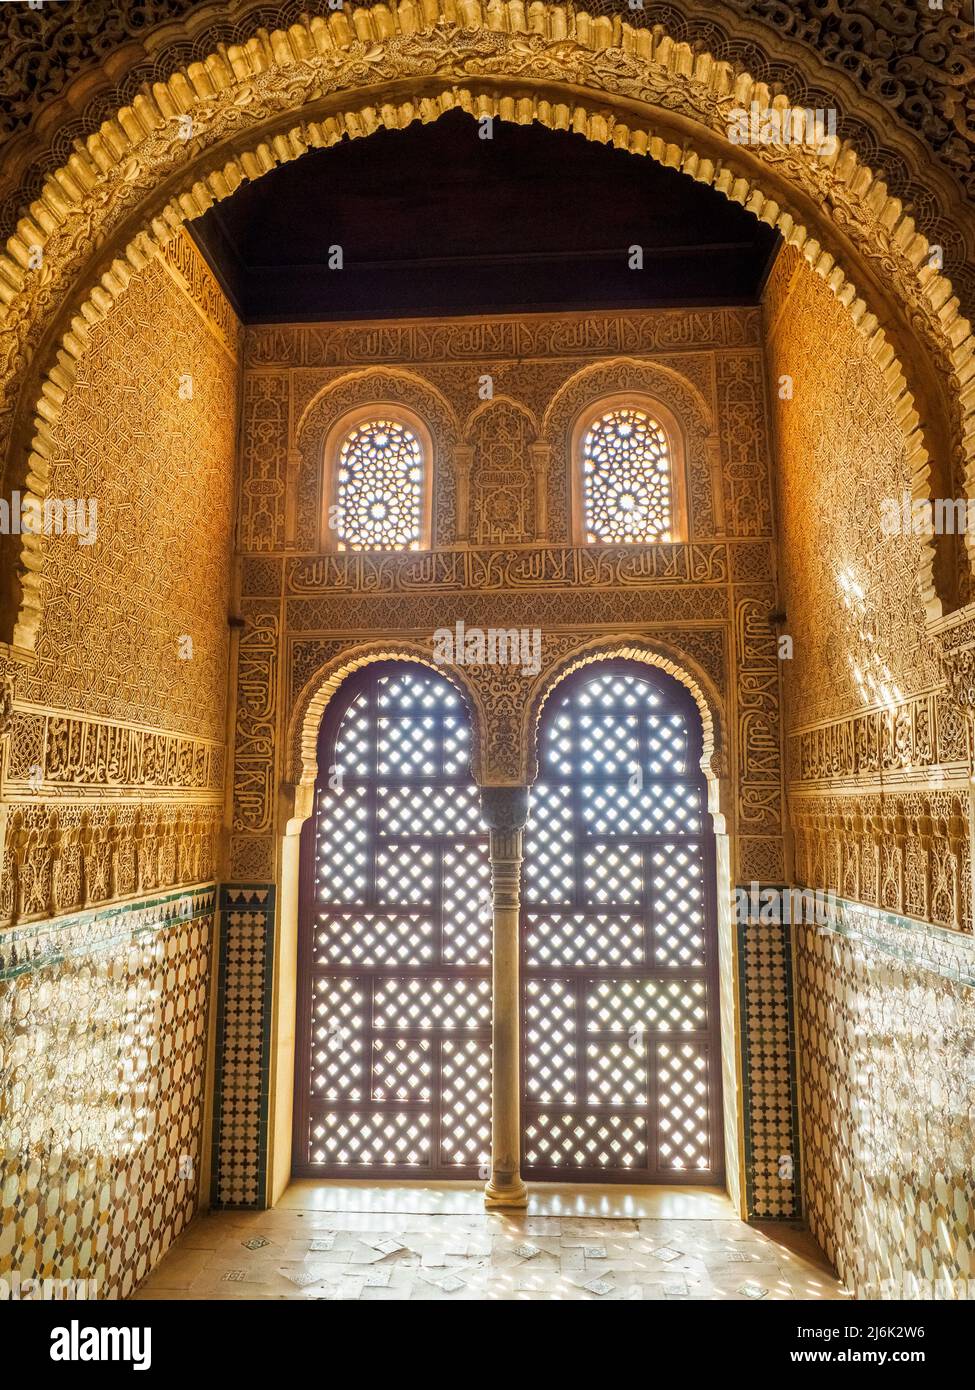 Alcôve dans la salle des Ambassadeurs à Comares Palais du complexe des palais royaux de Nasrid - complexe de l'Alhambra - Grenade, Espagne Banque D'Images